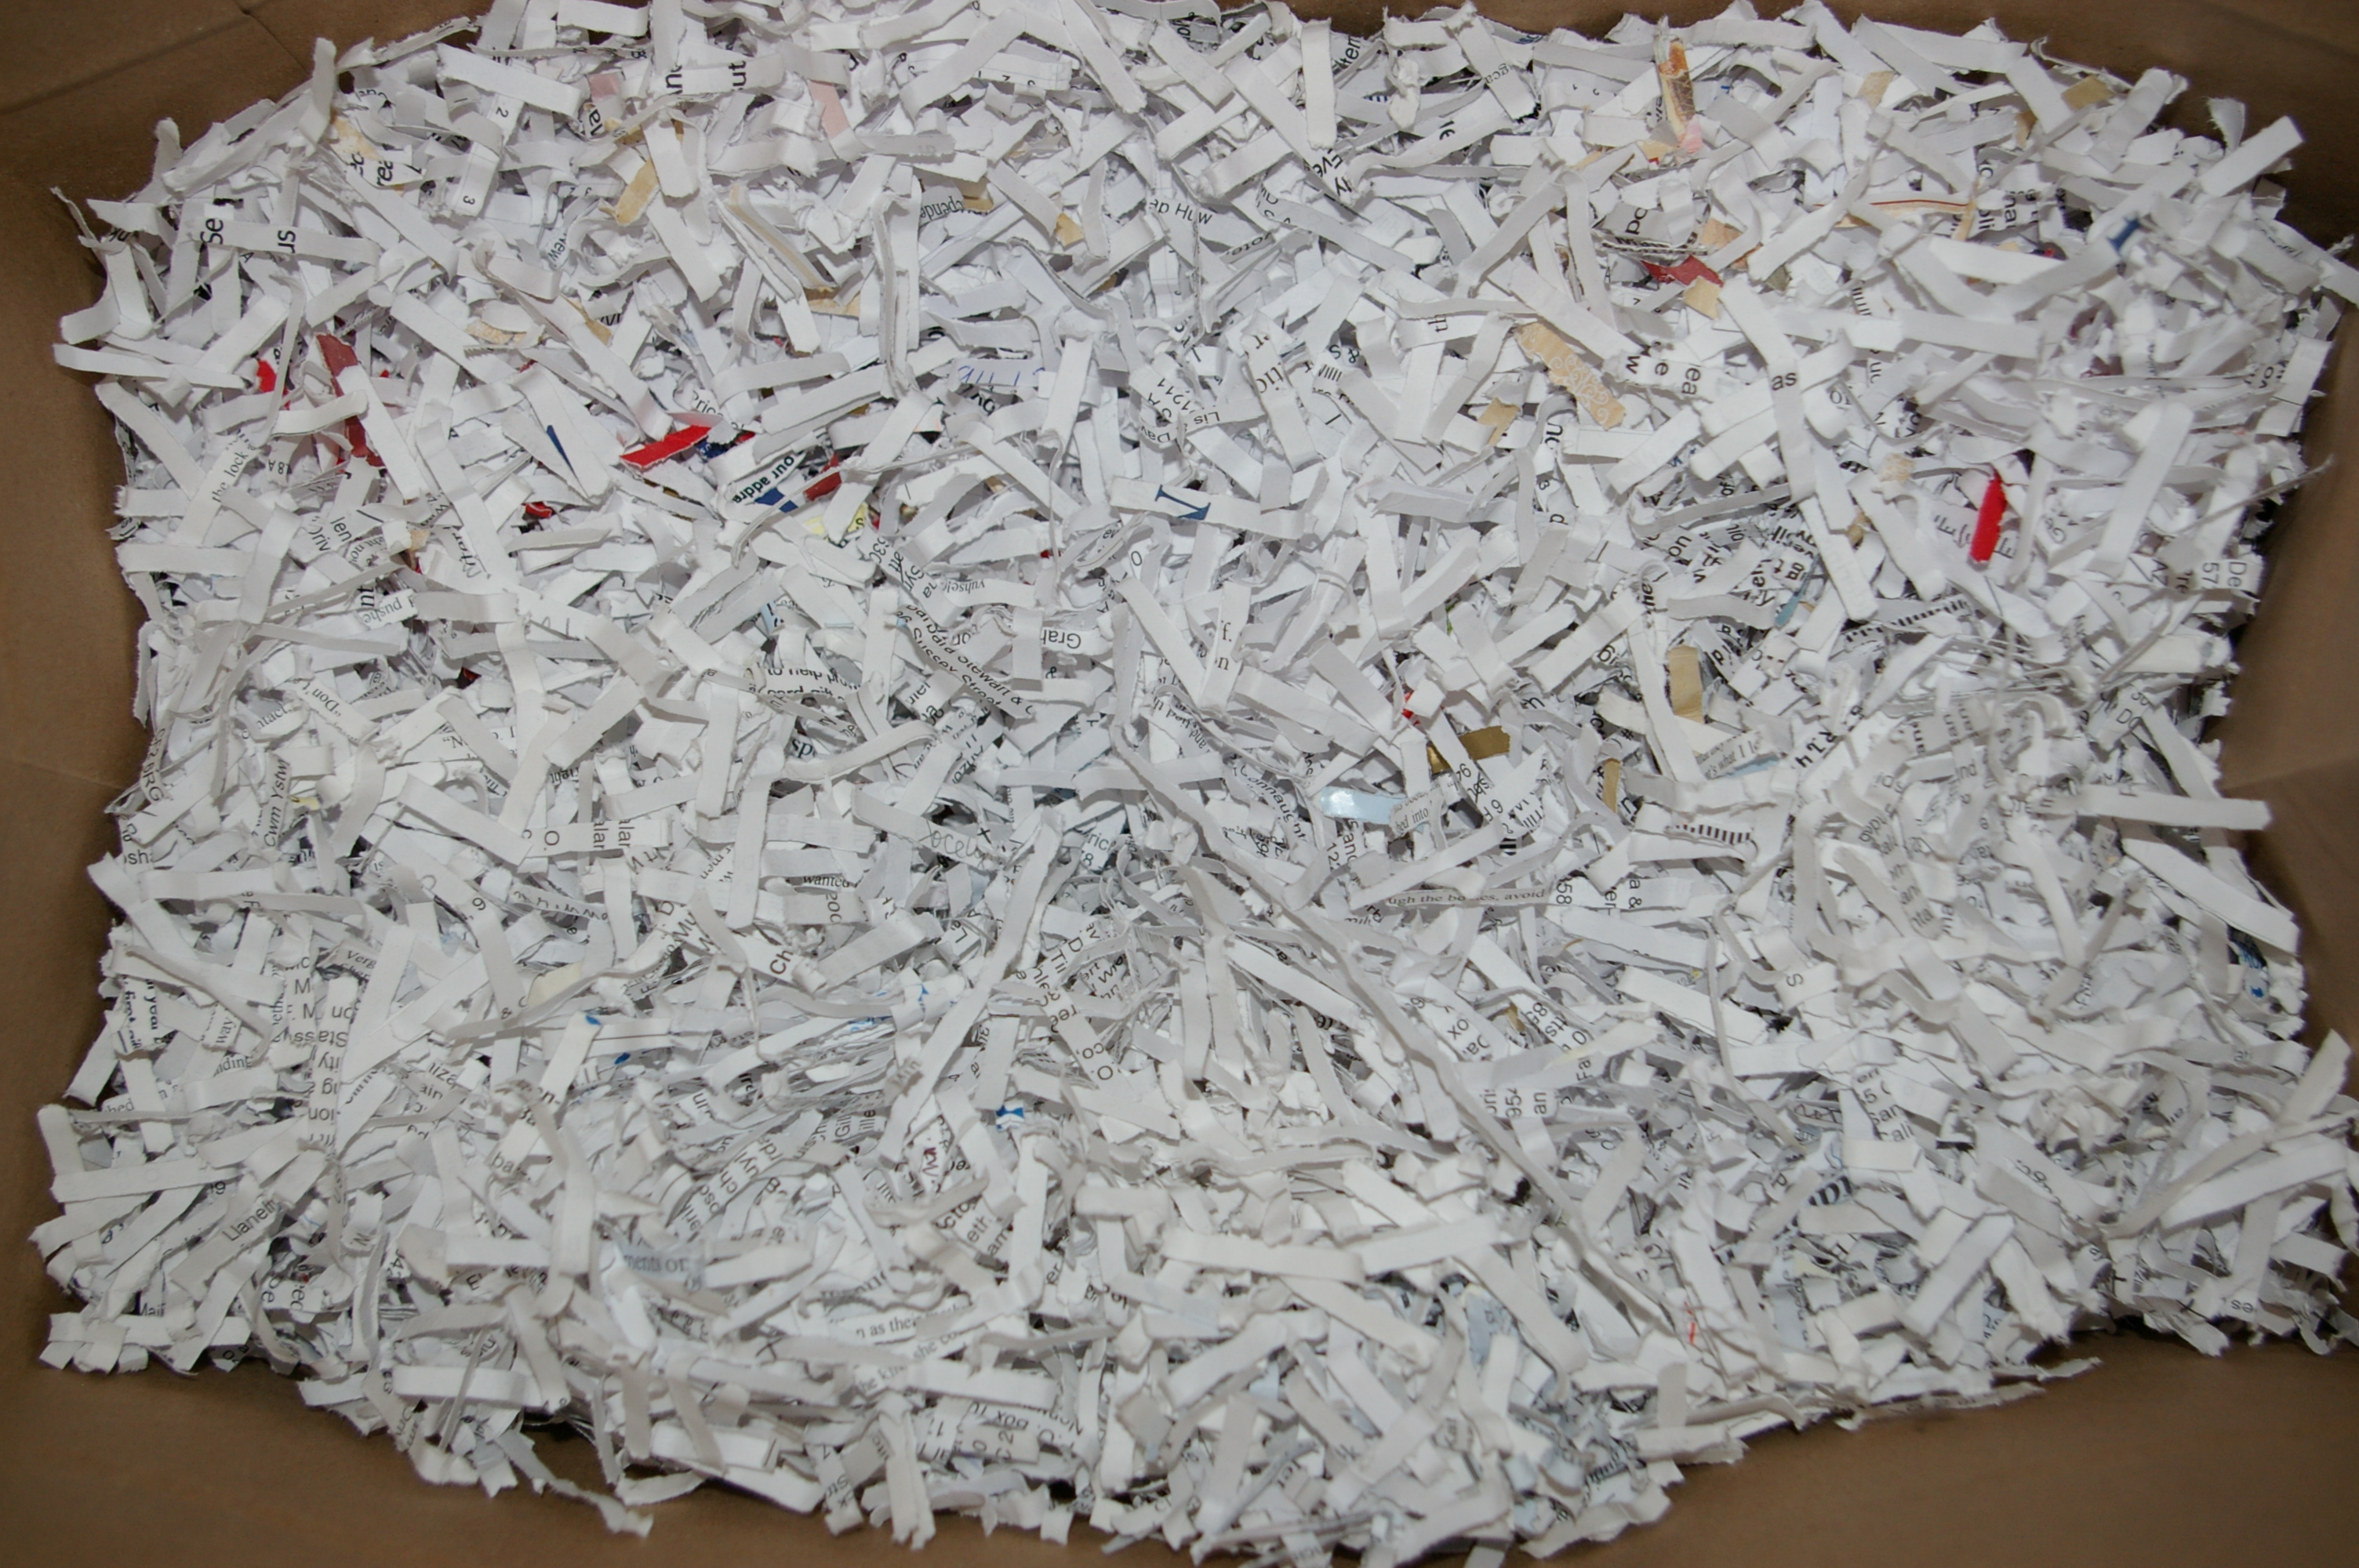 shredding